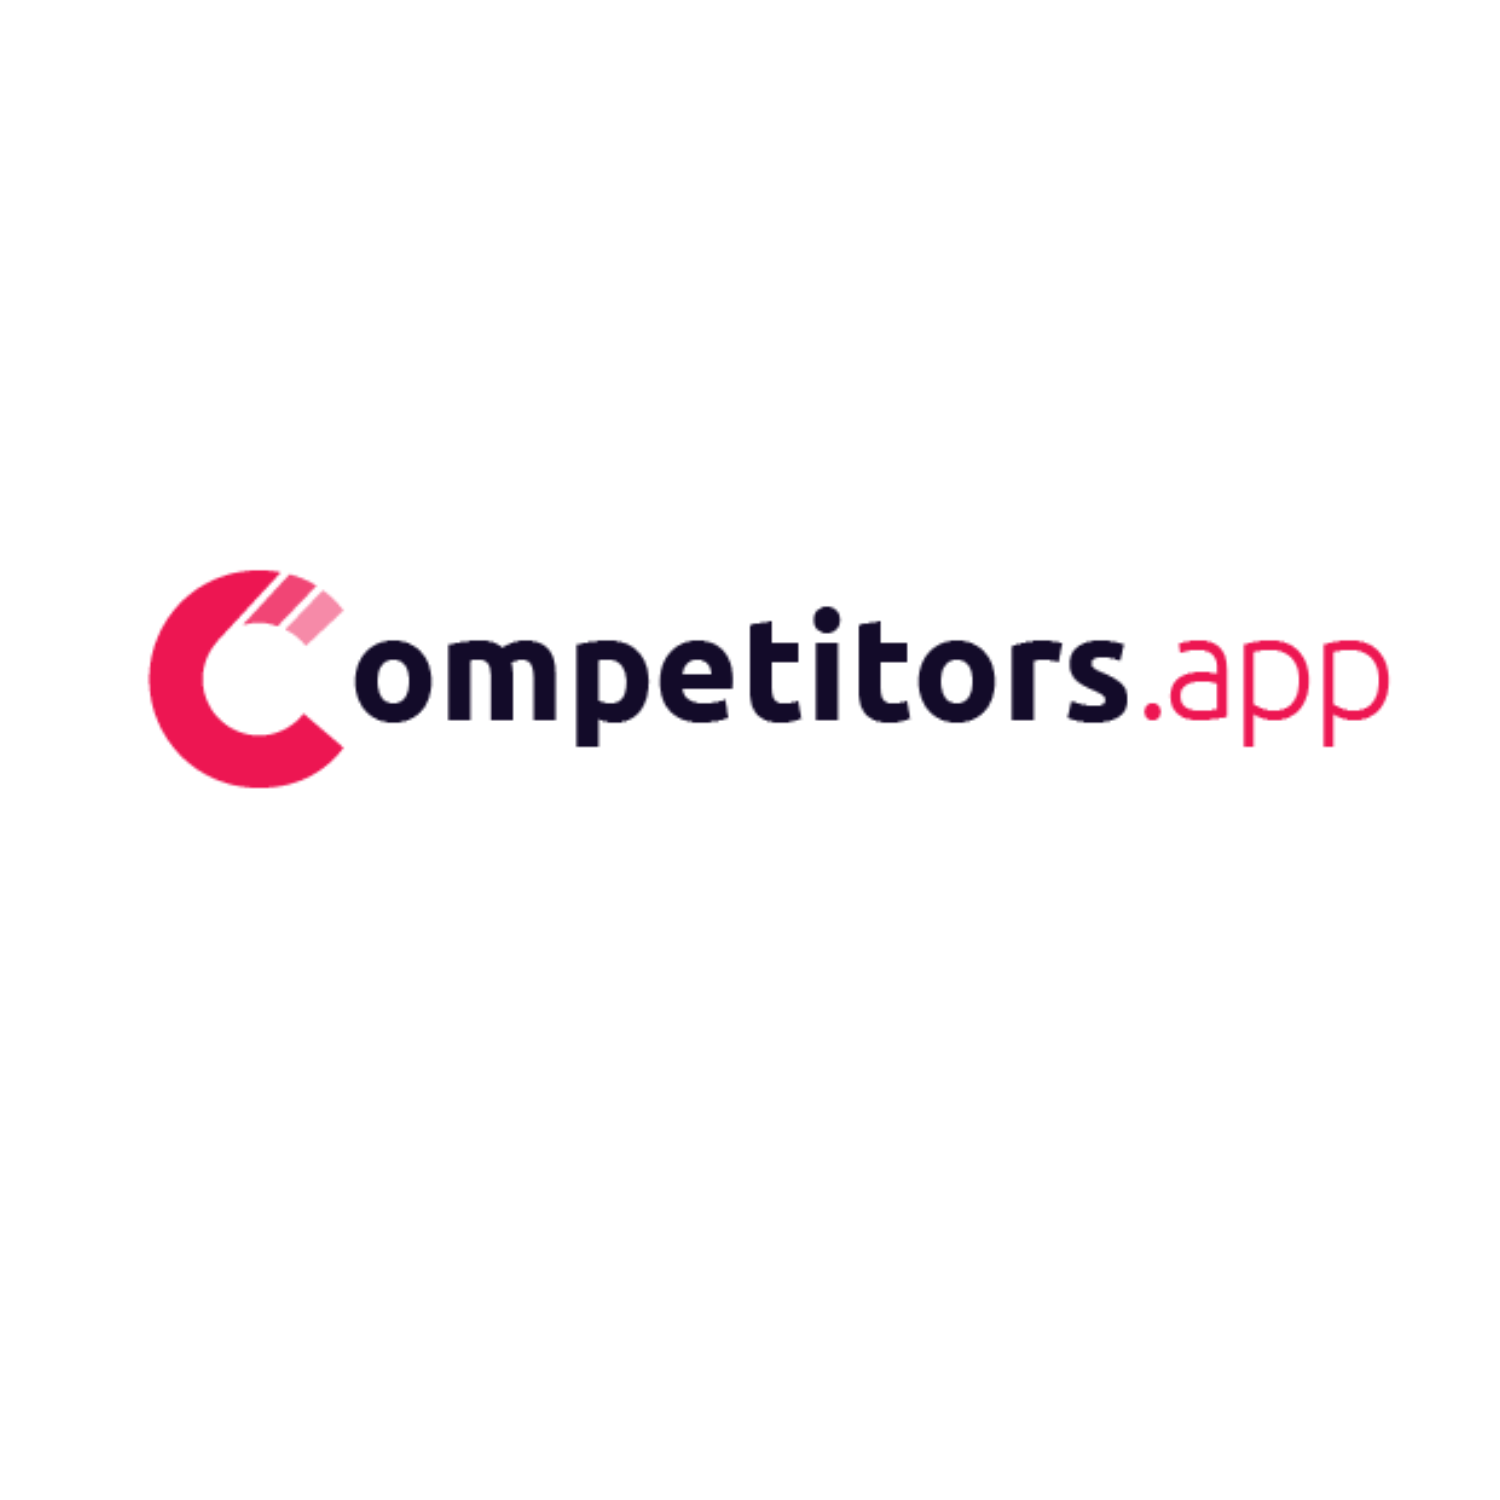 Competitorsapp